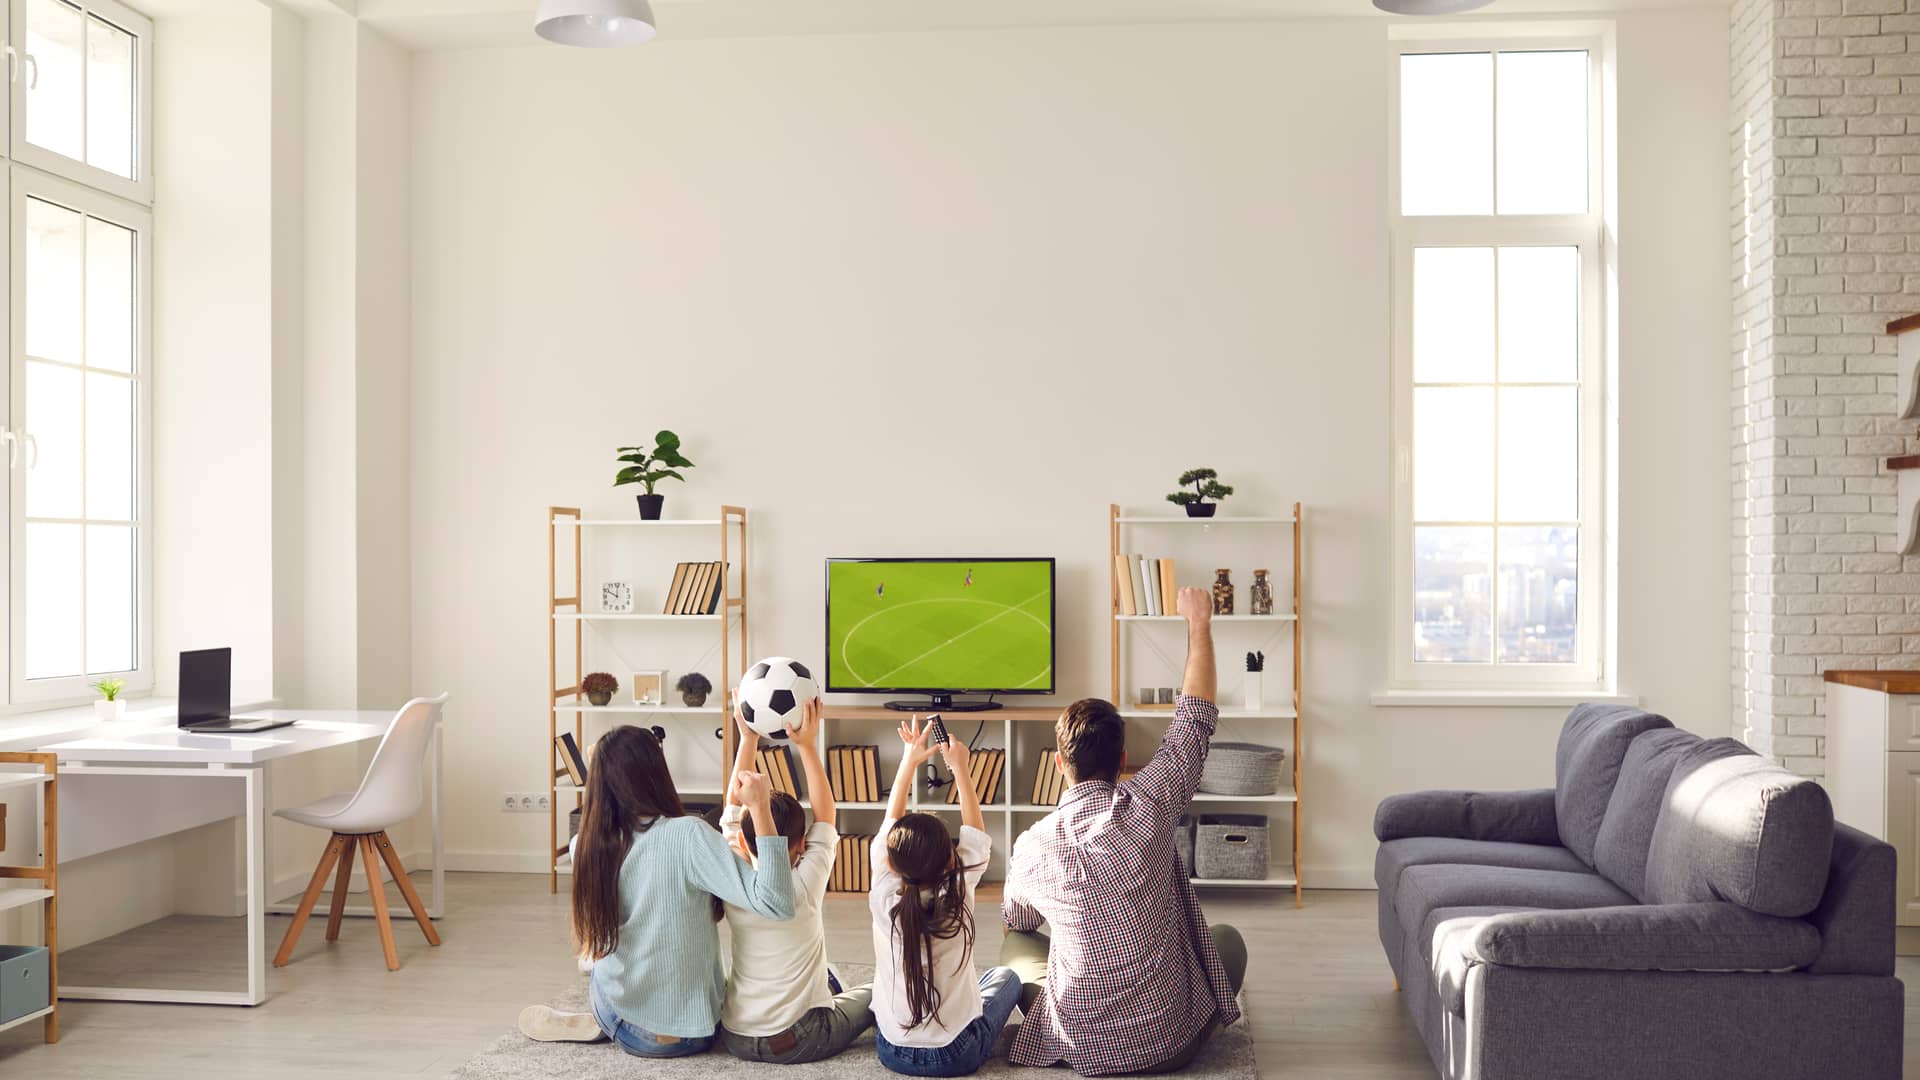 Footters Smart TV: ¿En qué televisor puedes ver los partidos de fútbol?